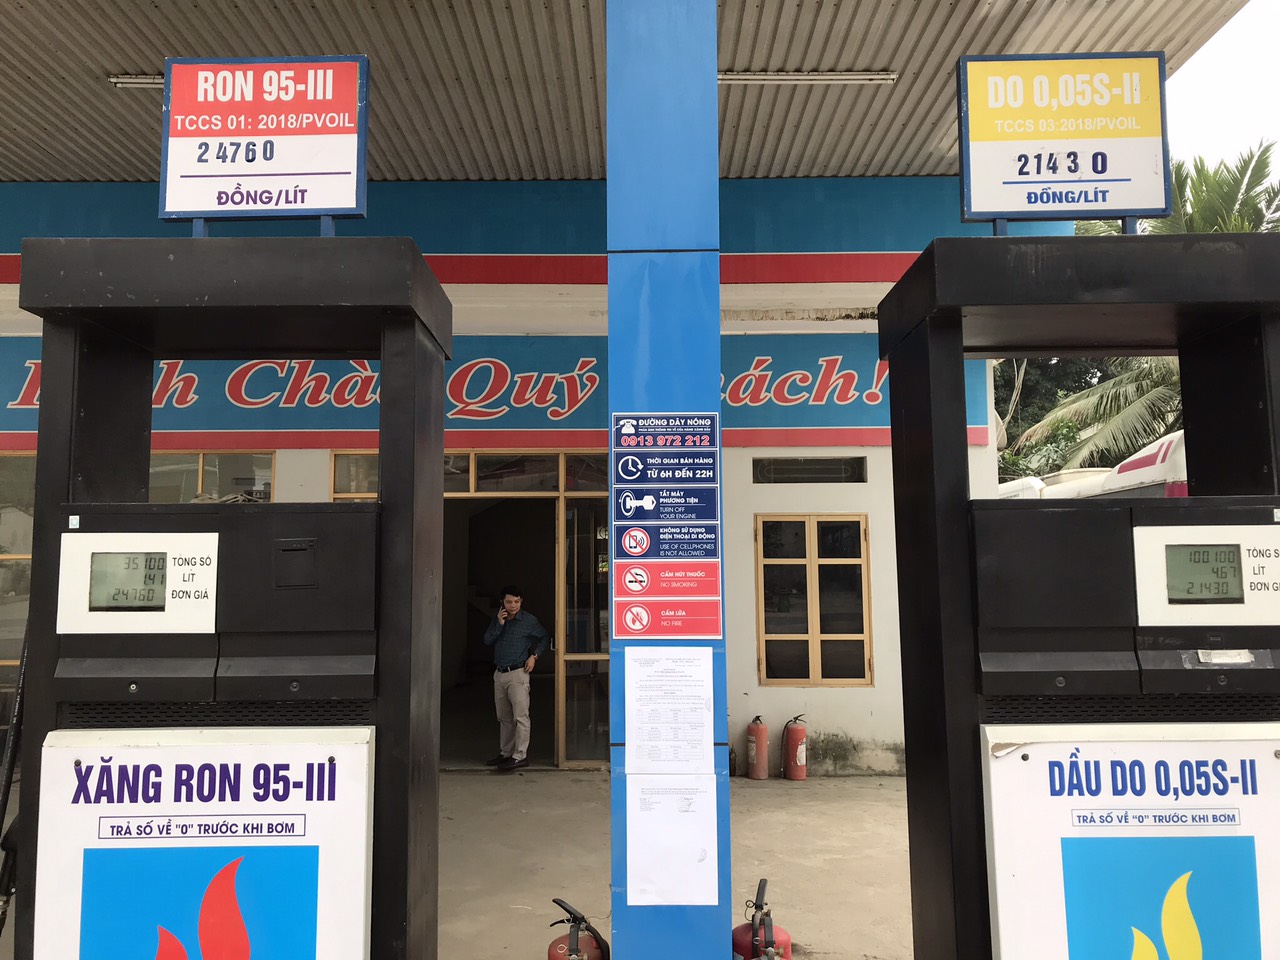 2 DN xăng dầu tại Phú Thọ bị xử phạt 120 triệu đồng do vi phạm trong kinh doanh xăng dầu.